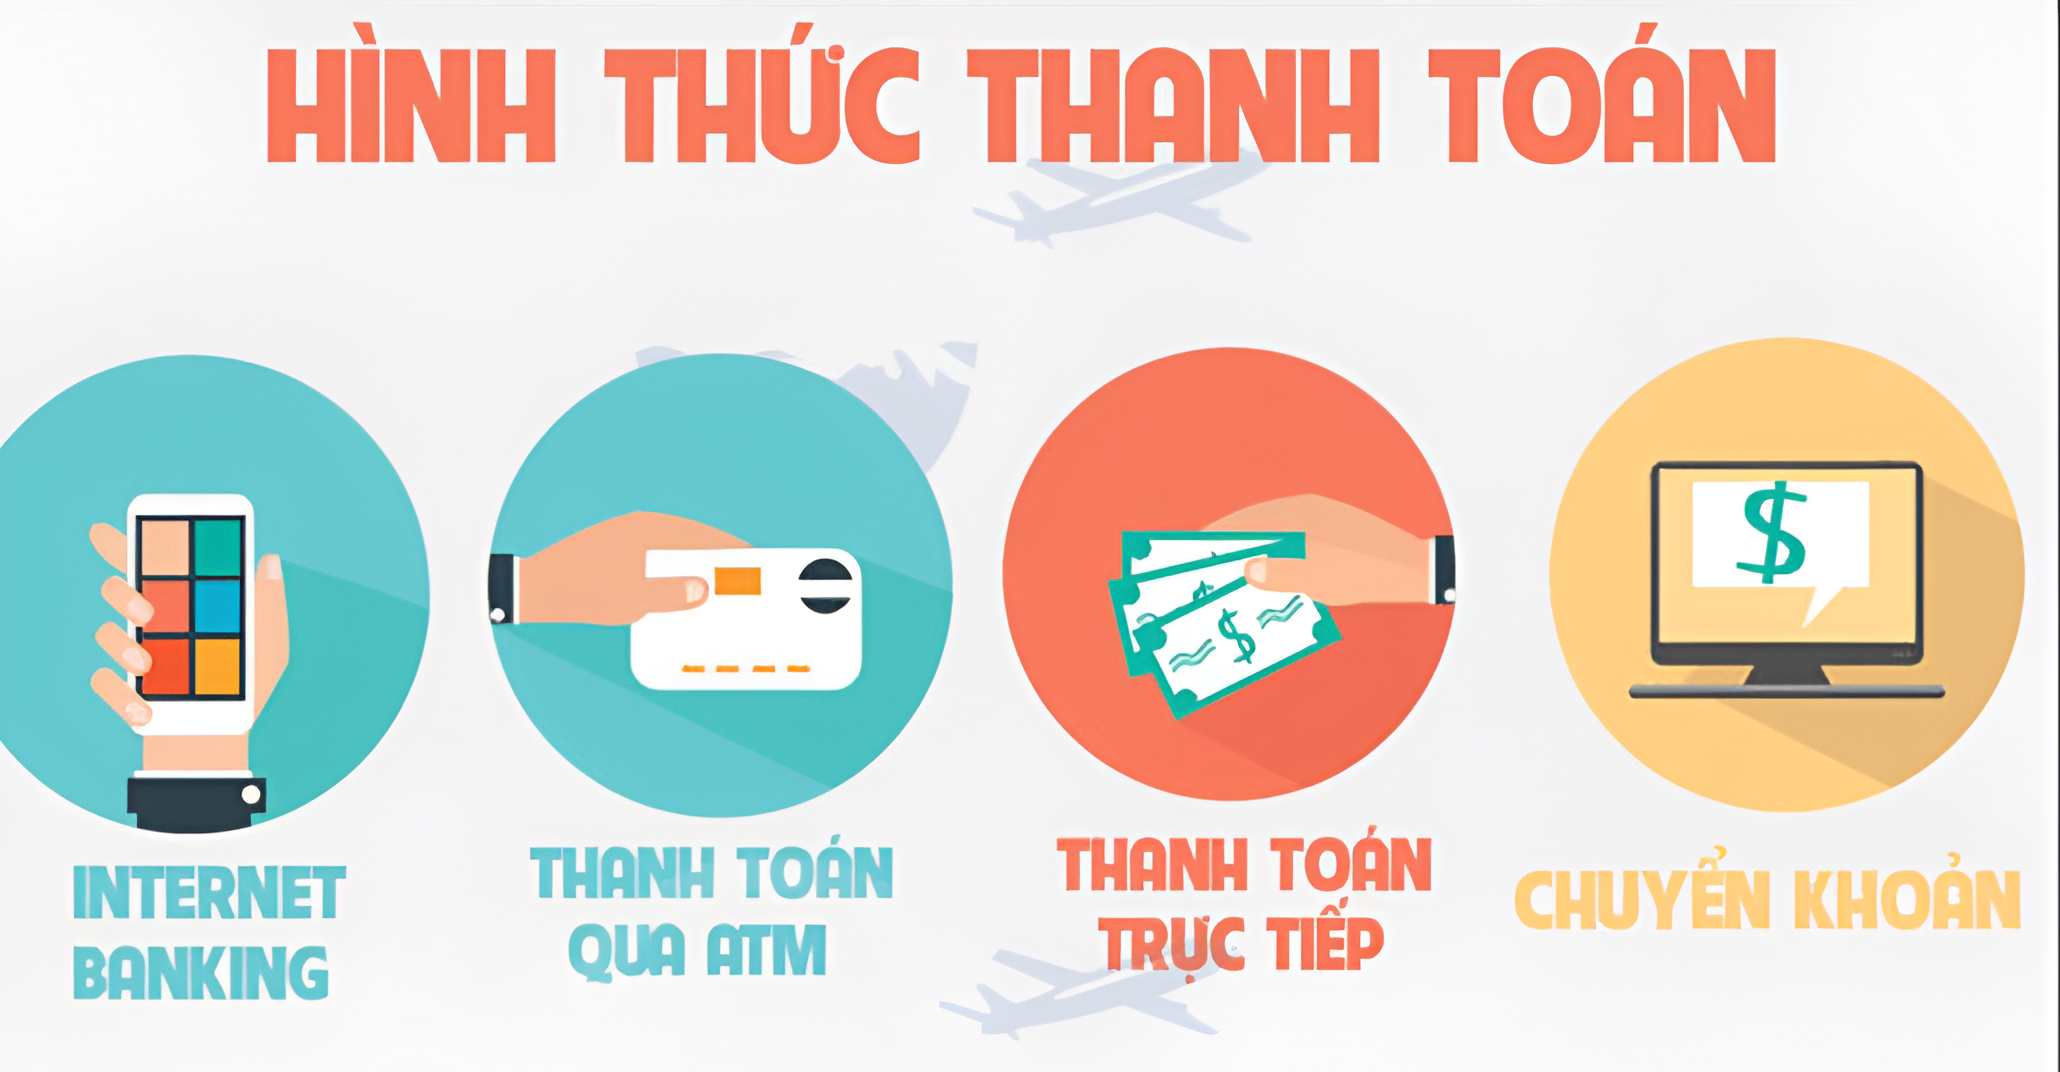 Hình thức mua và thanh toán gói hút ẩm của Thịnh Phong Corp tại Cần Thơ